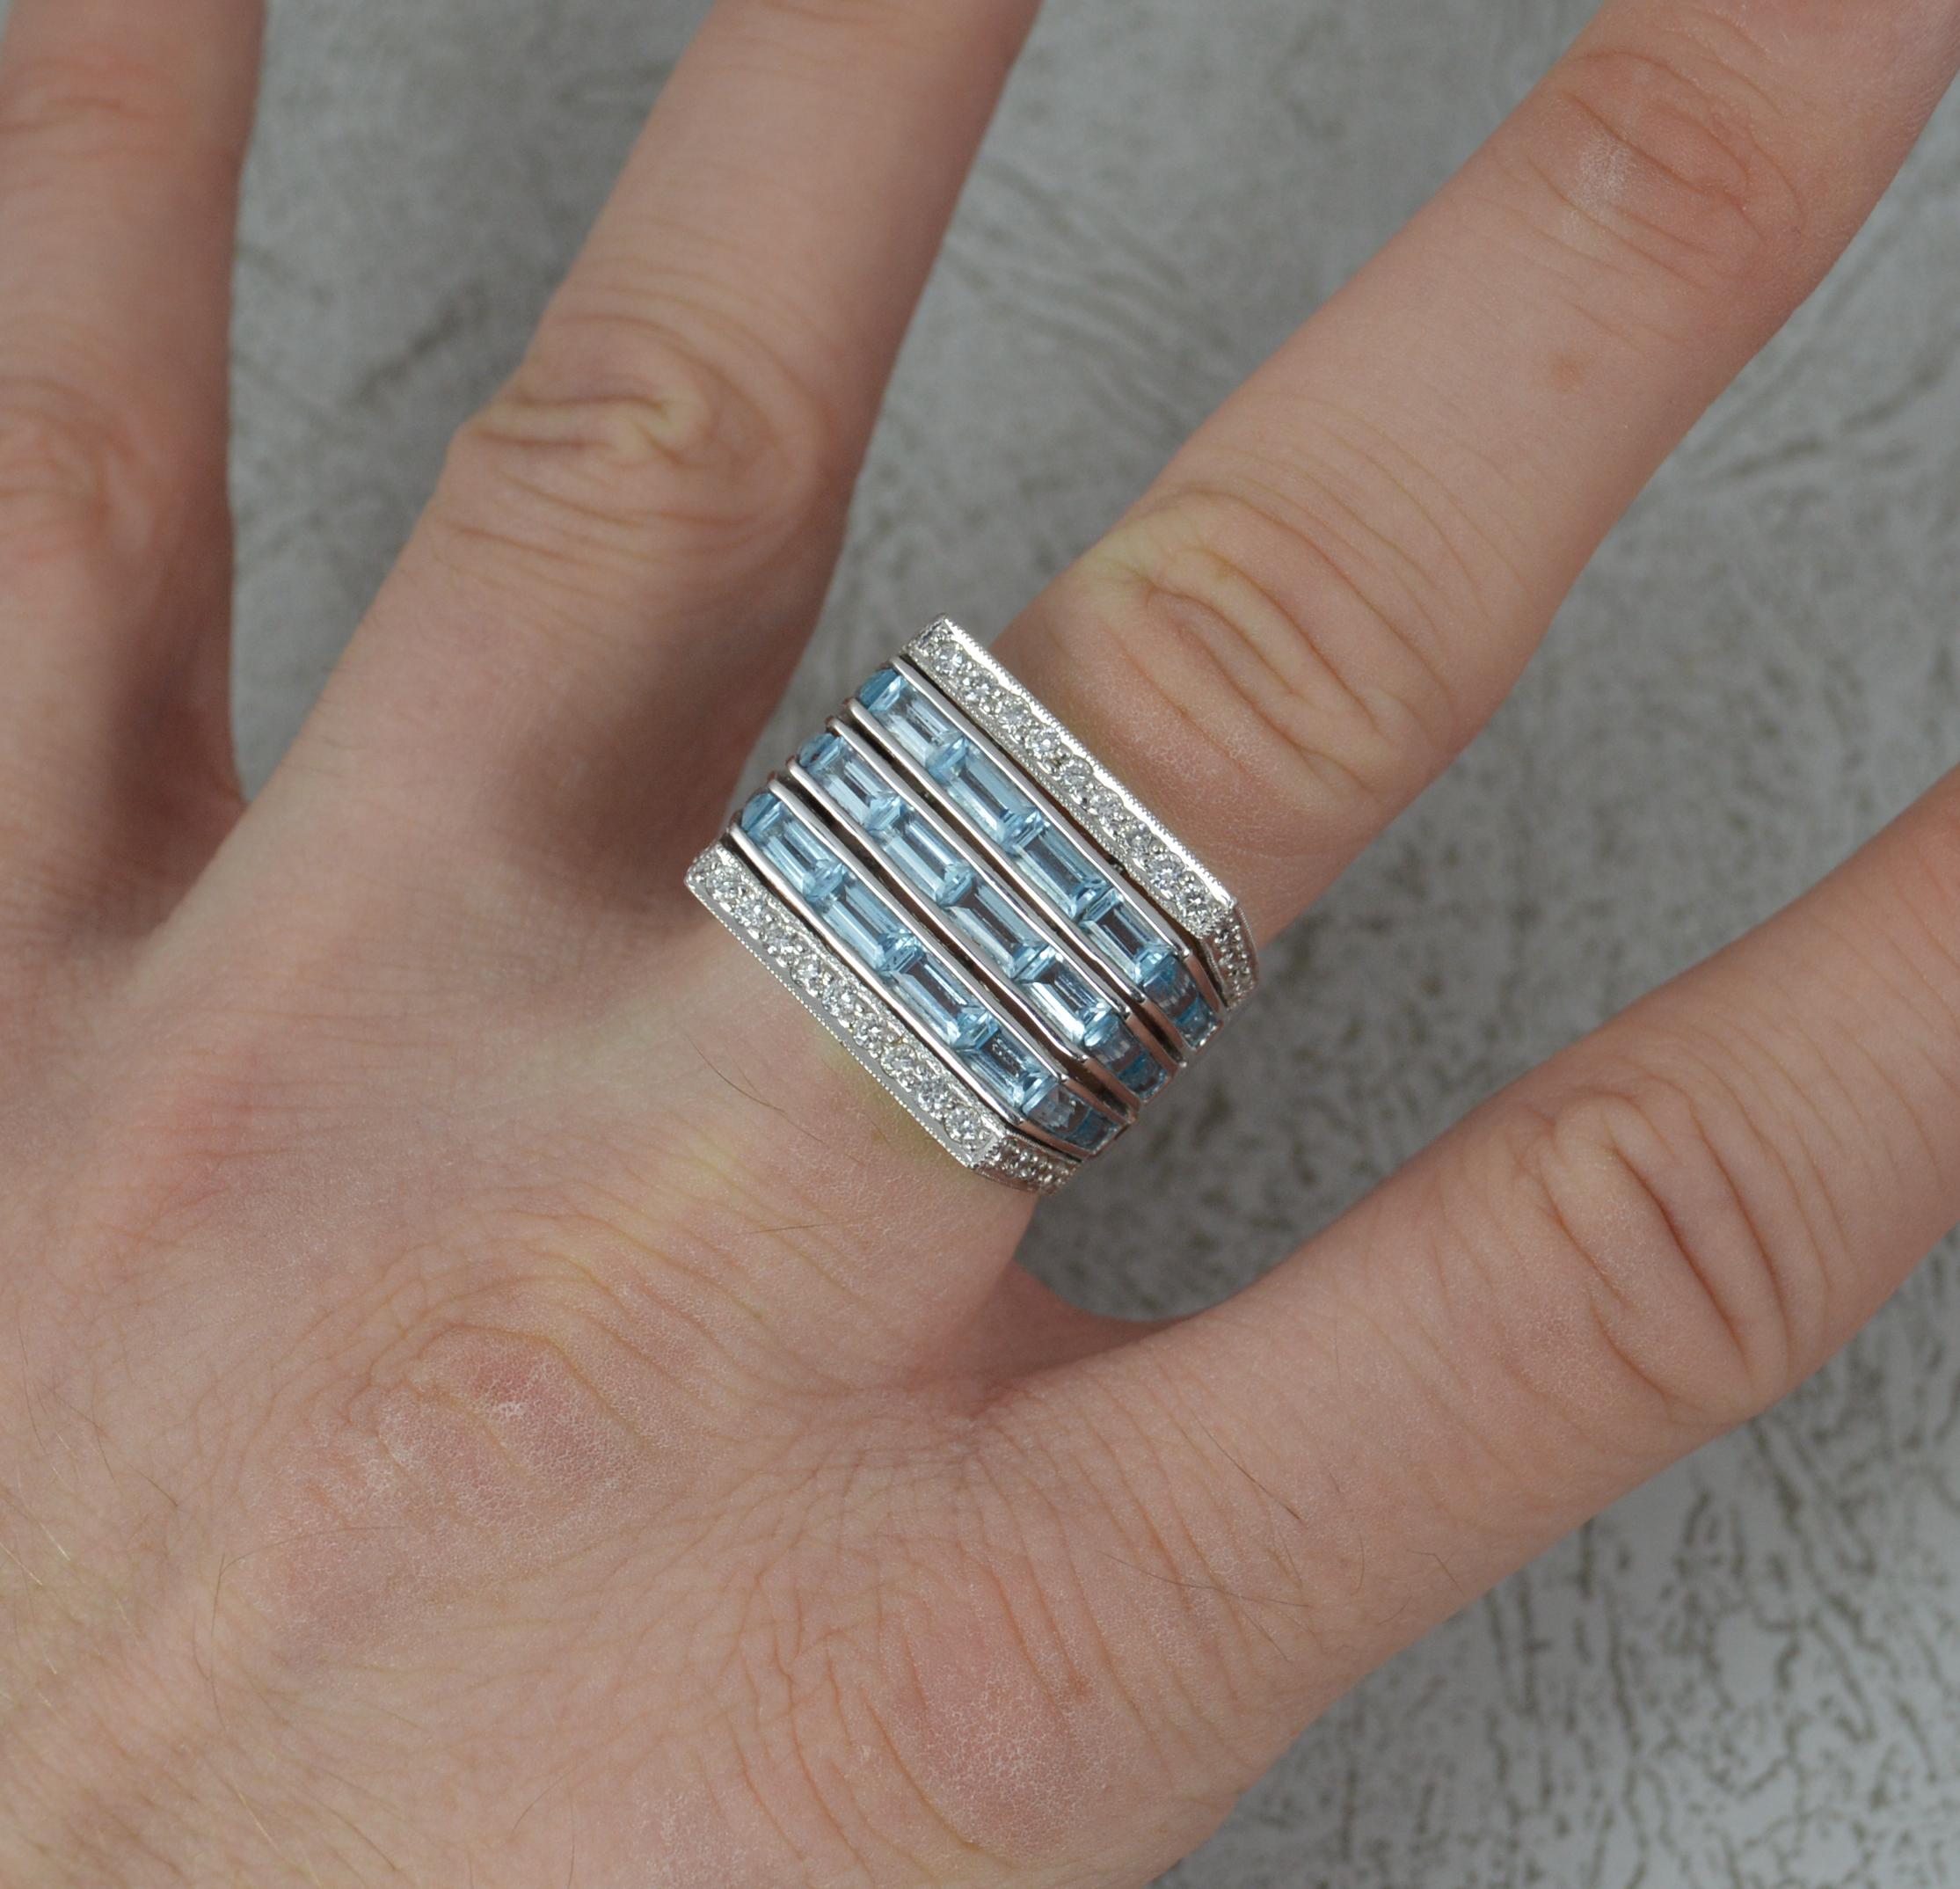 Ein schwerer Ring aus 18 Karat Gold, Topas und Diamanten.
Drei horizontale Reihen von blauen Topasen im Baguetteschliff mit weiteren Reihen von runden Diamanten im Brillantschliff oben und unten. 3.64 Karat Topas und 0,52 Karat Diamanten.
18mm x